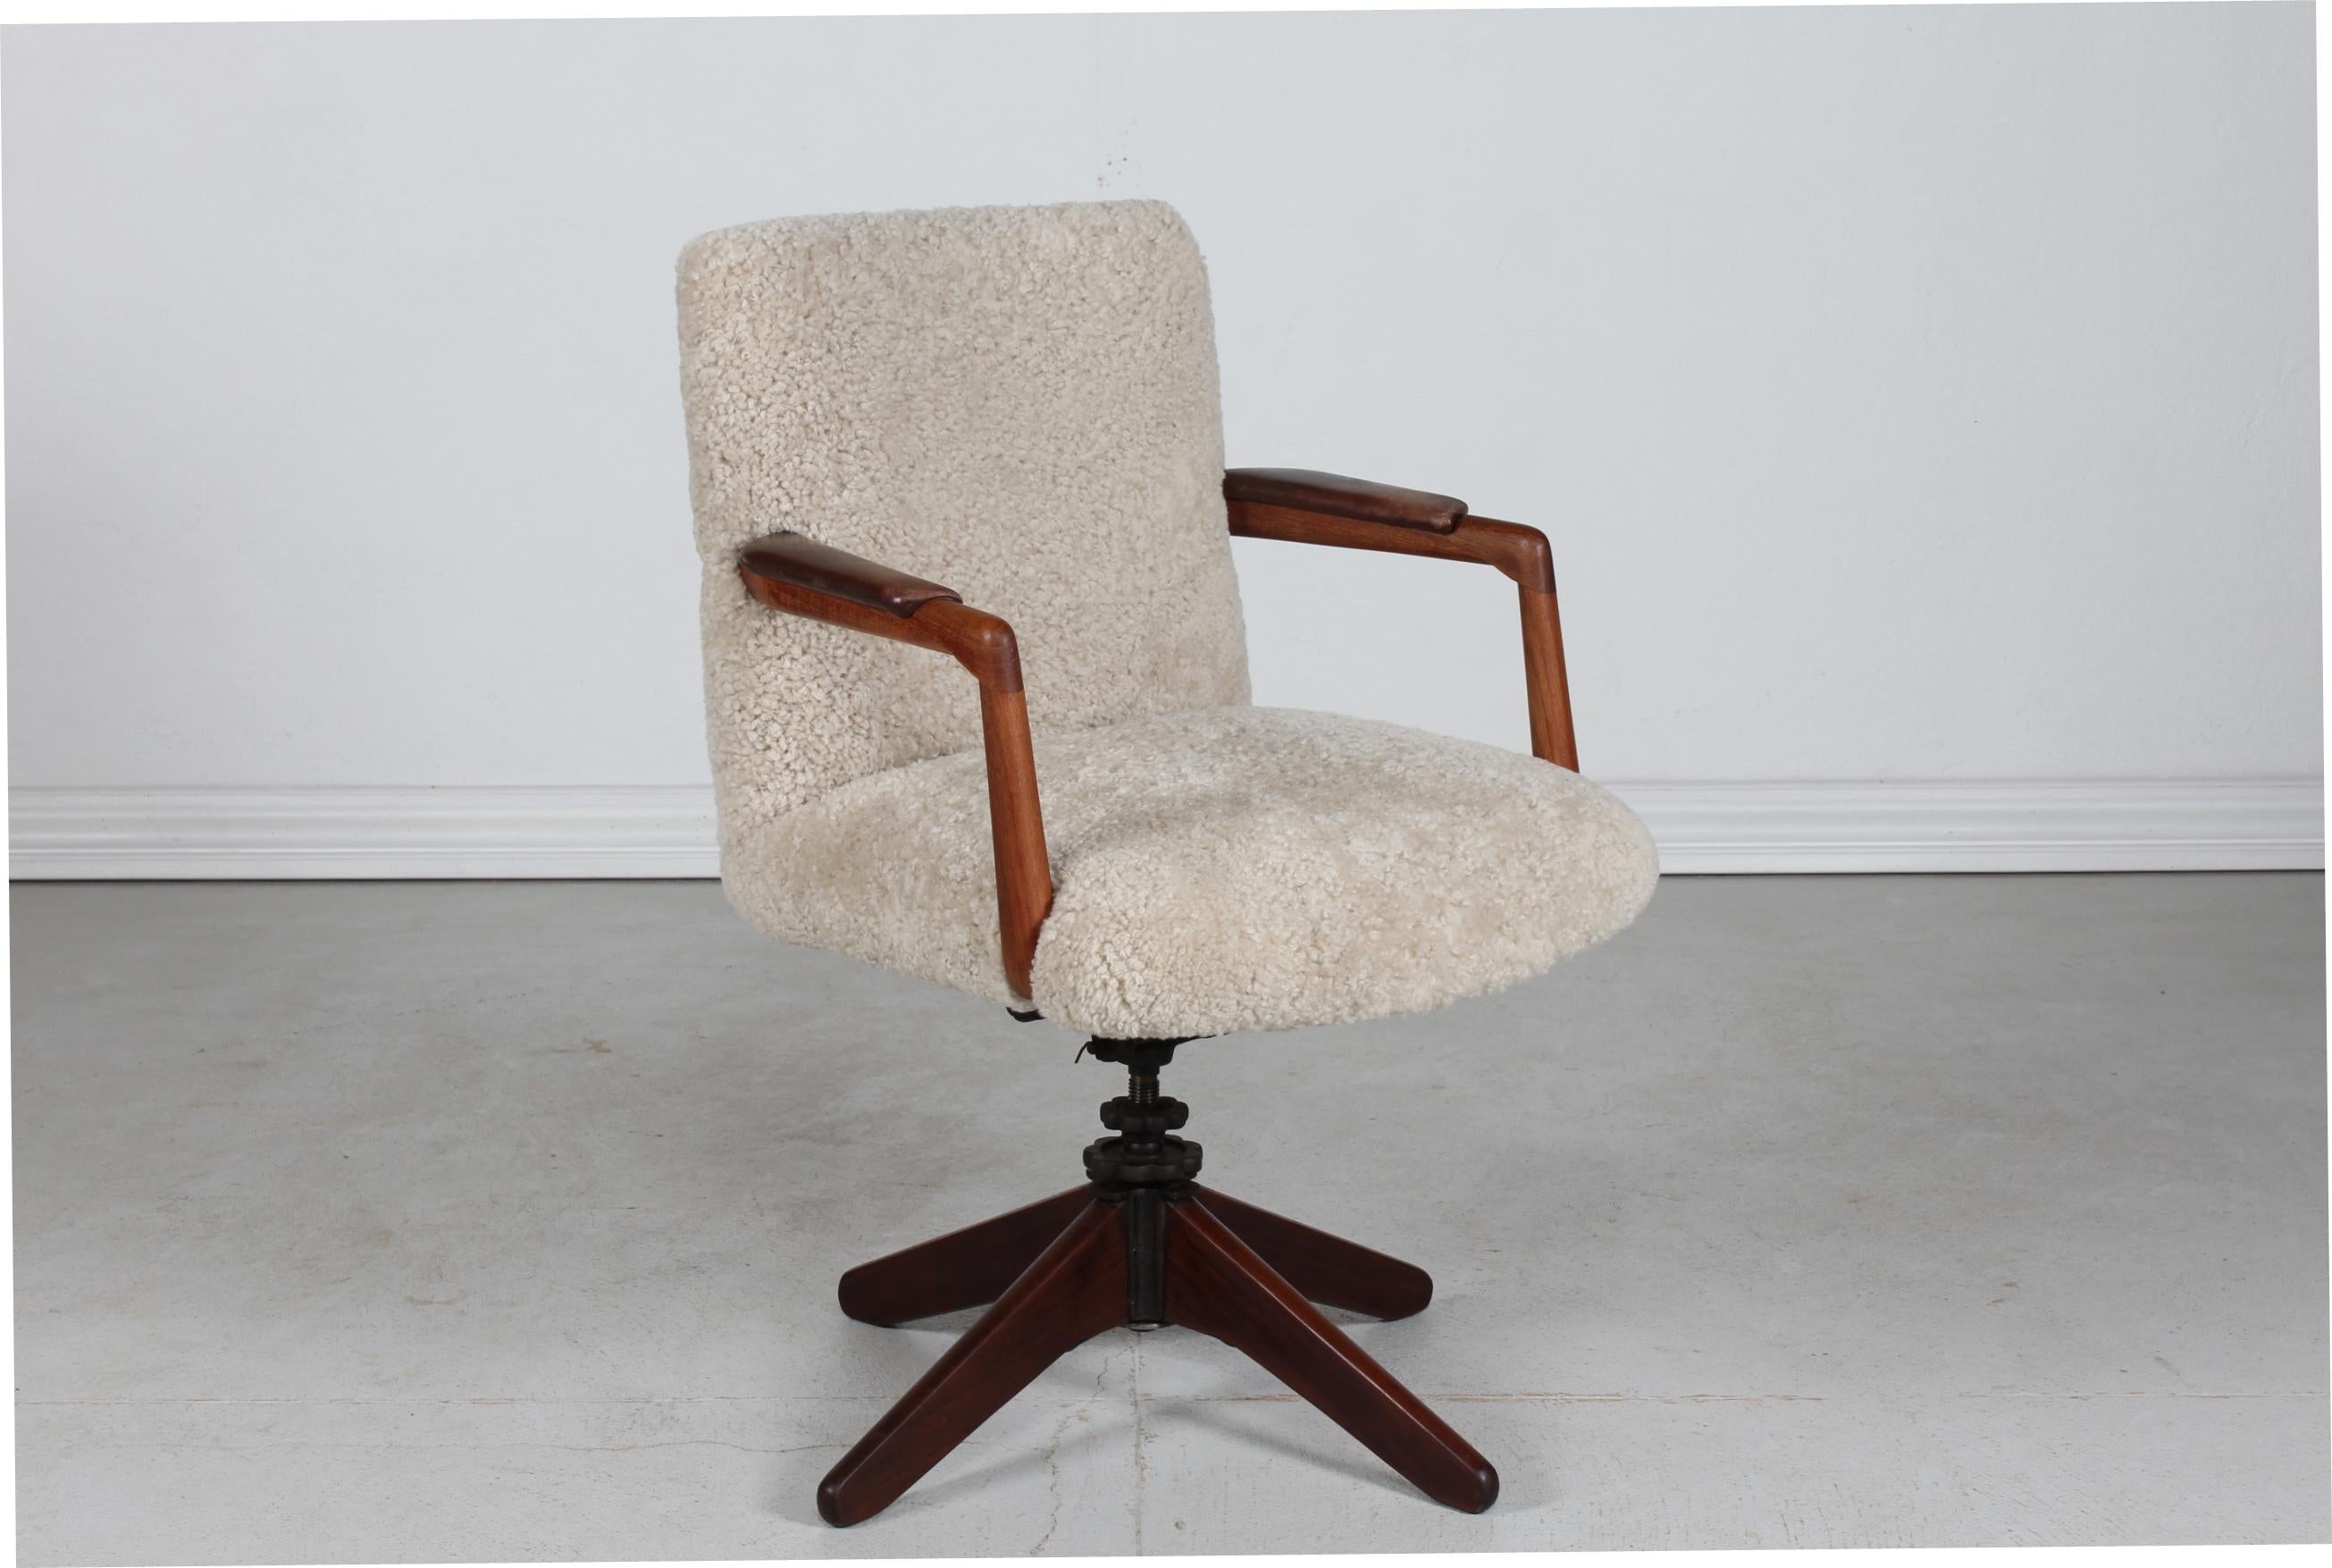 Chaise pivotante/chaise de bureau danoise vintage de style Hans J. Wegner.
Les accoudoirs en teck sont recouverts du cuir d'origine. 
L'assise et le dossier sont recouverts d'une nouvelle peau de mouton. 

Il est possible de régler l'angle du siège